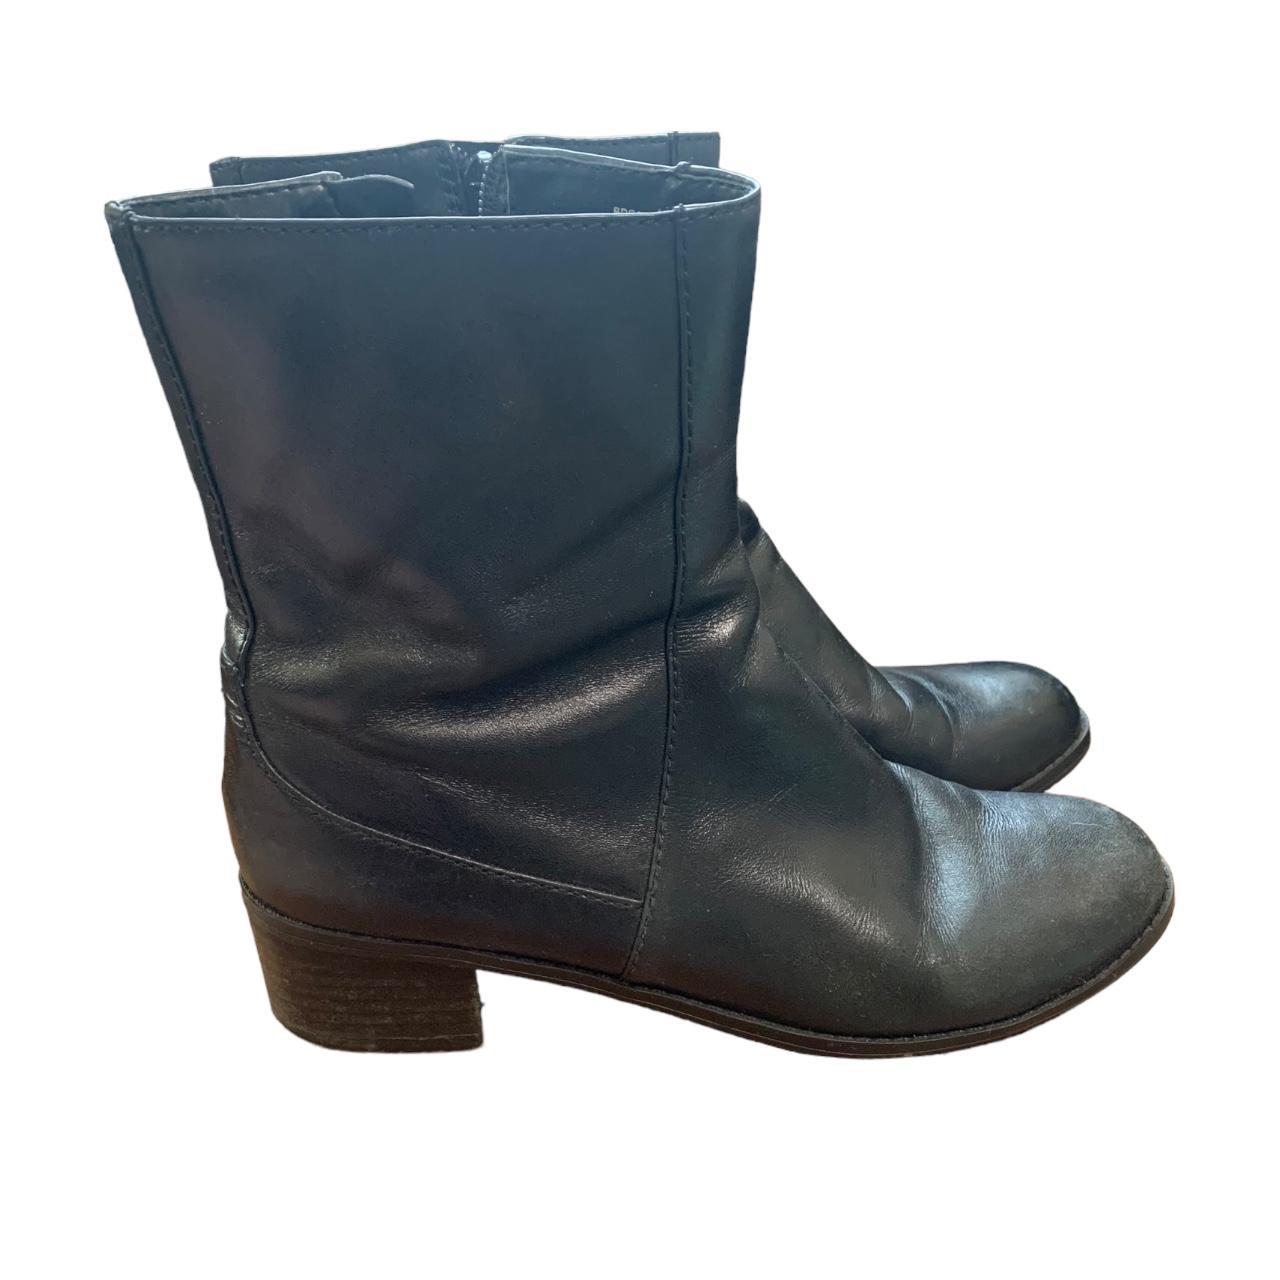 Vintage 90s Black Bandolino Boots, size 7.5. Black... - Depop